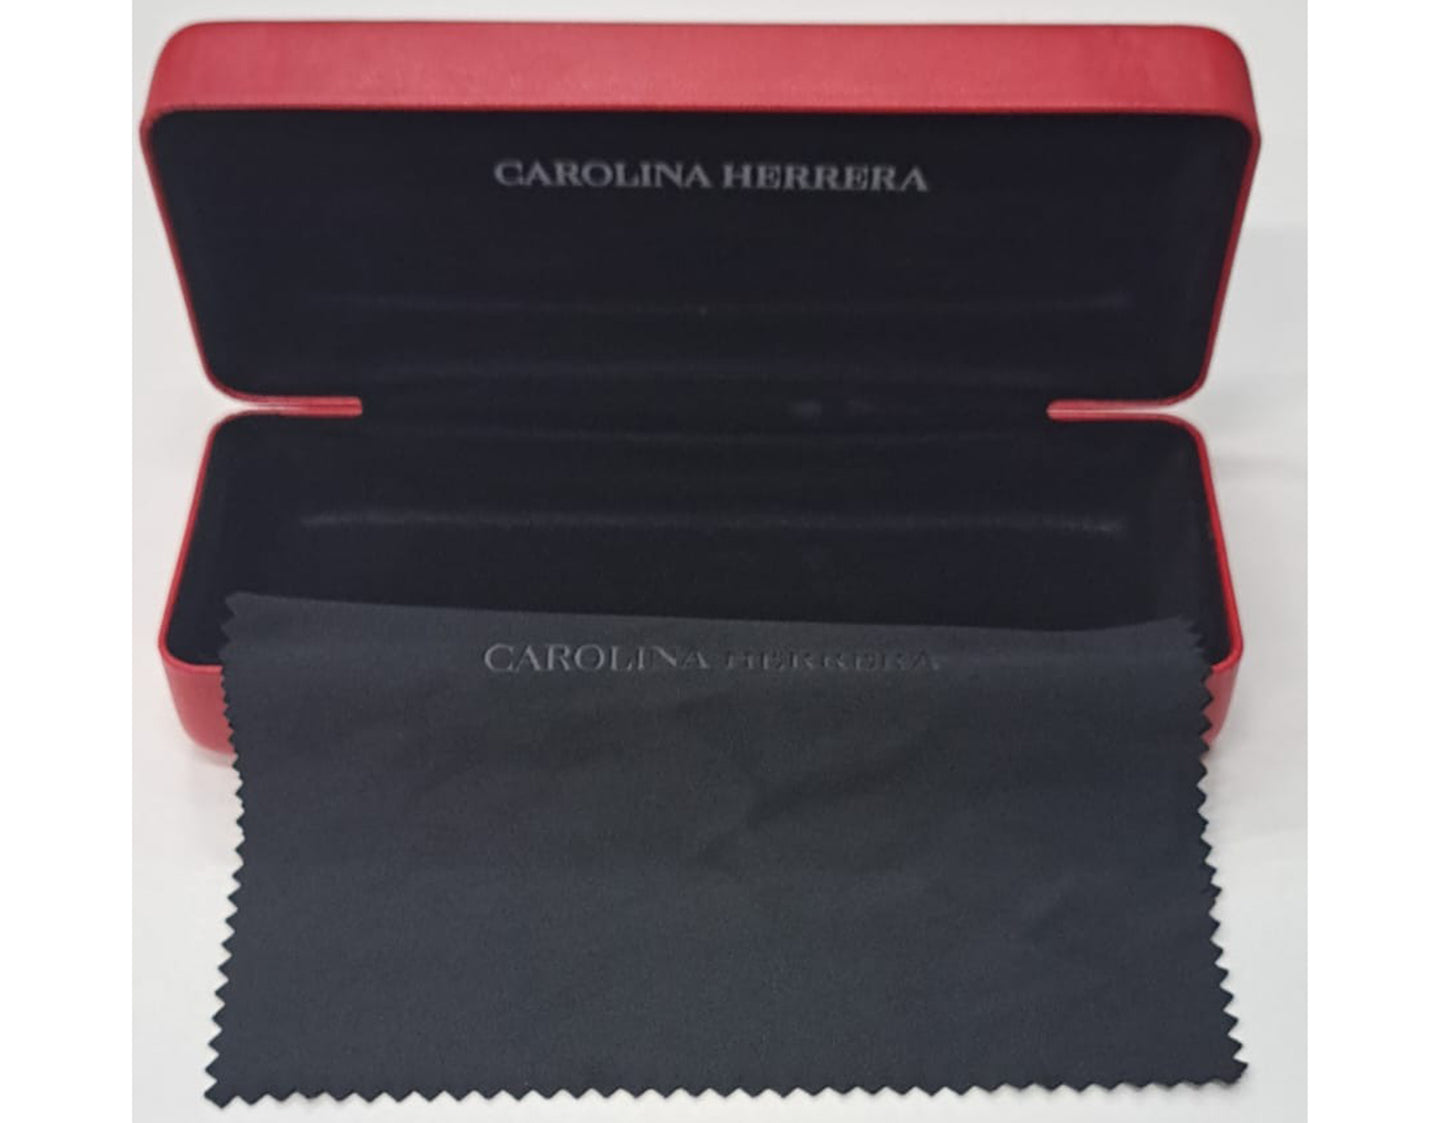 Carolina Herrera VHE837L-722Y-51  New Eyeglasses